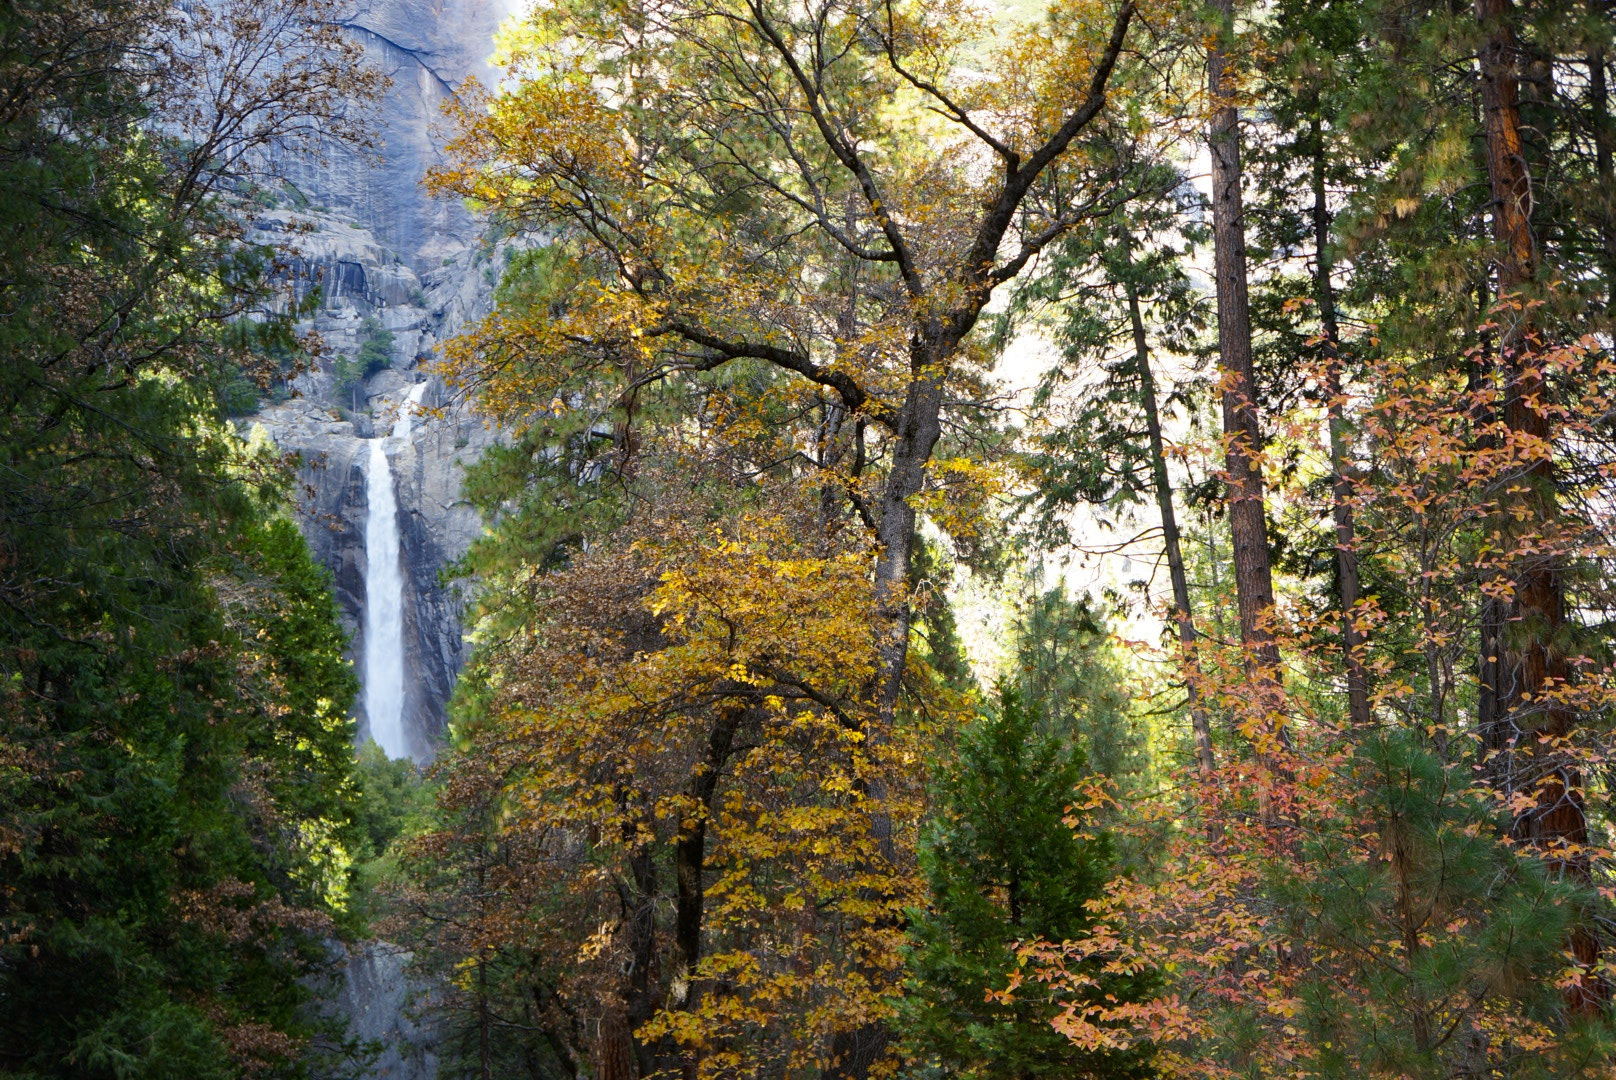 Sony Alpha NEX-6 + Sony E 18-55mm F3.5-5.6 OSS sample photo. Yosemite fall photography